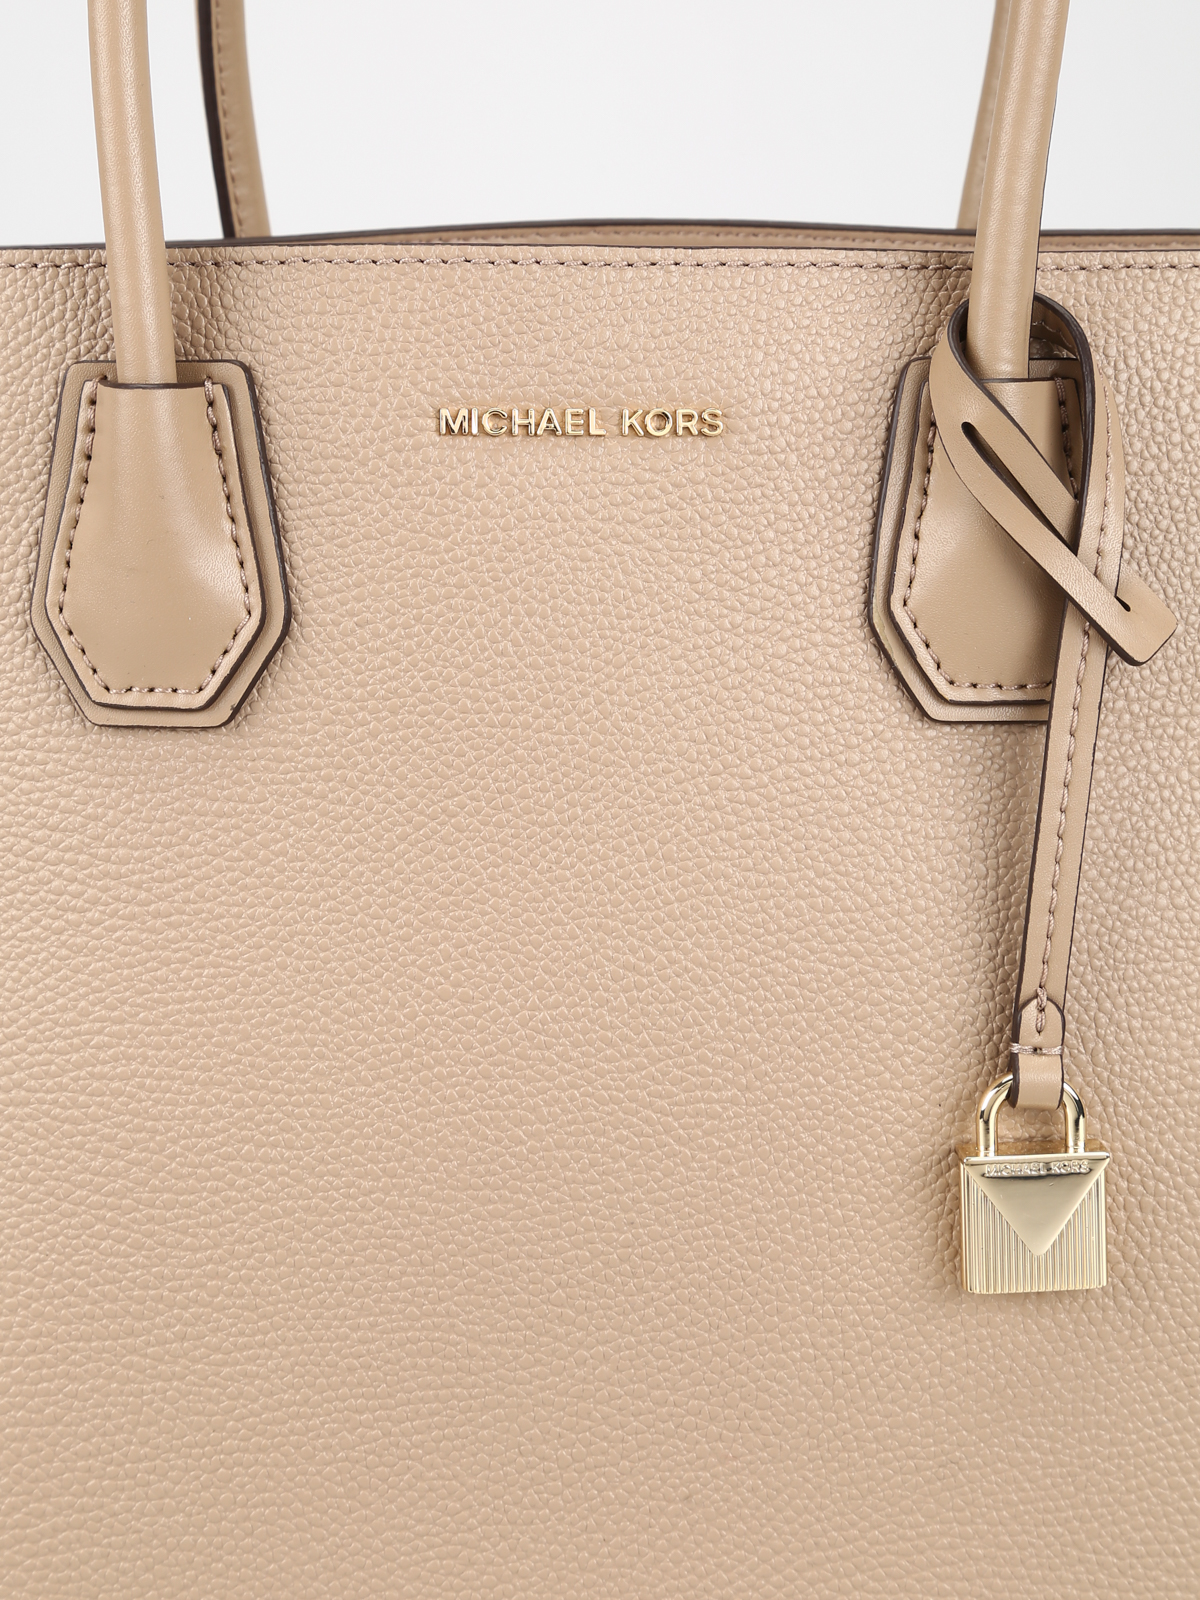 MICHAEL Michael Kors Mercer Leather Messenger Bag, Truffle